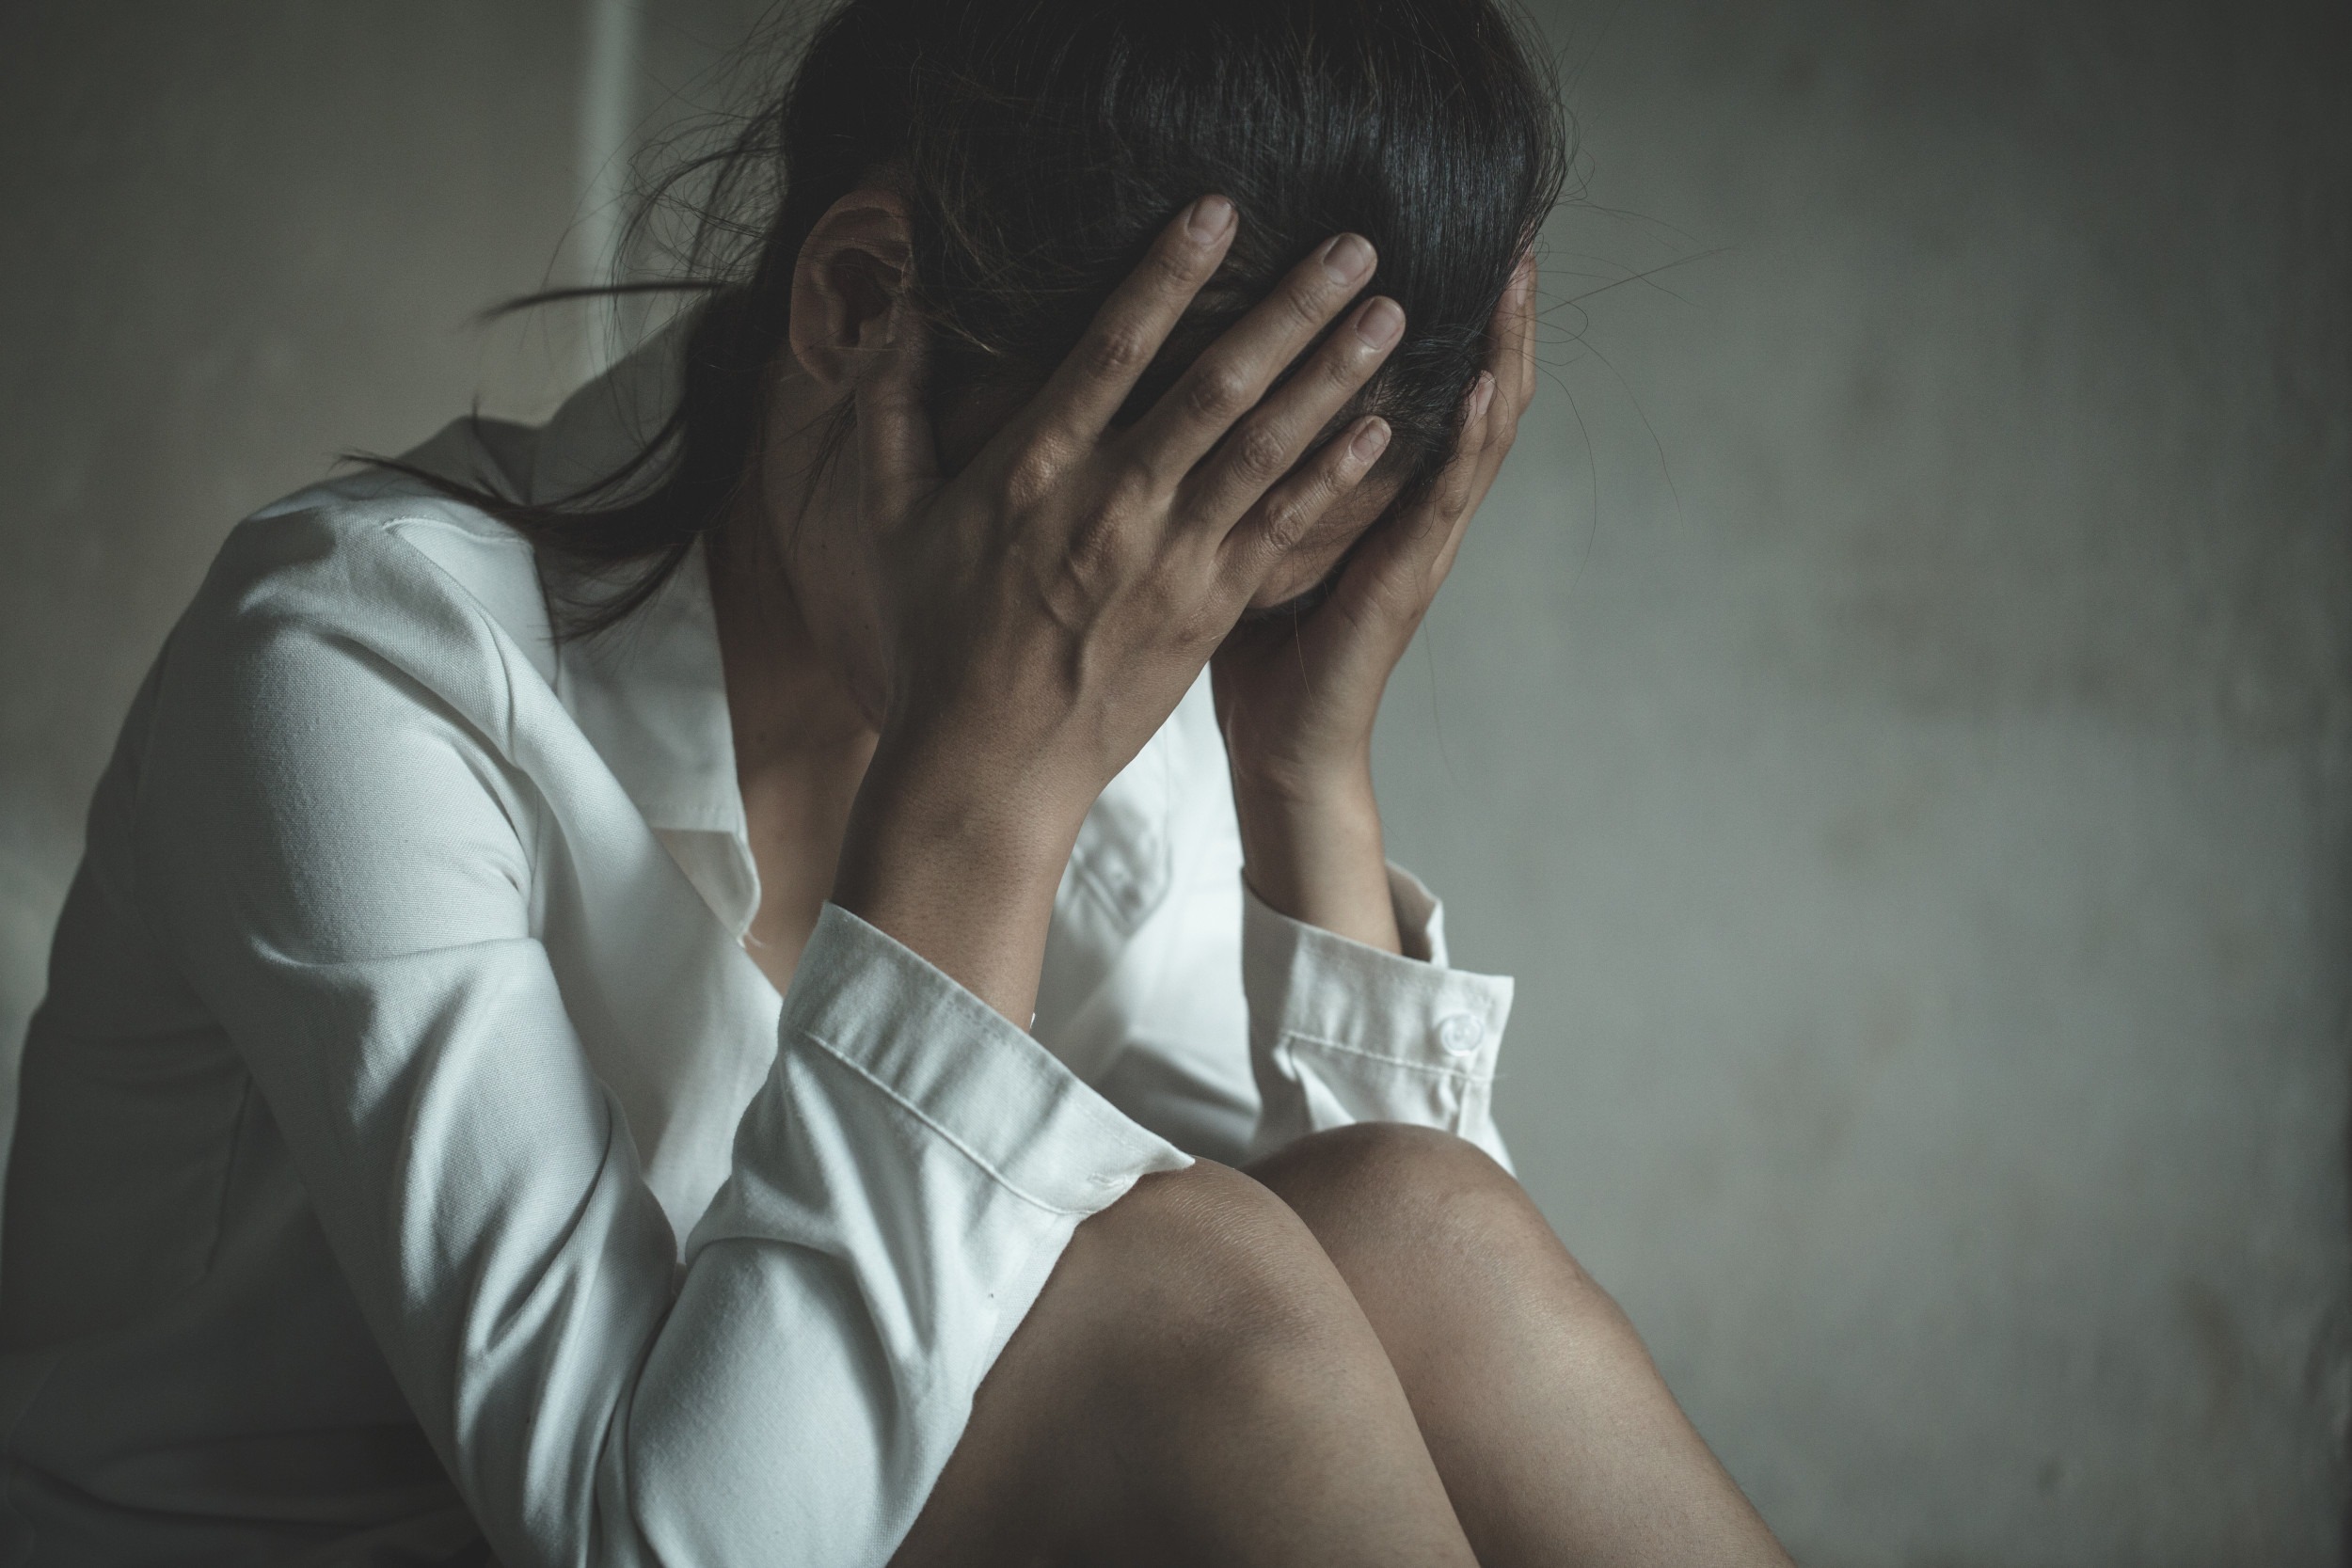 Βιασμός ψυχιατρική κλινική: Σάλος στην Κρήτη με την ασέλγεια σε βάρος 18χρονης ασθενούς από 44χρονο ασθενή